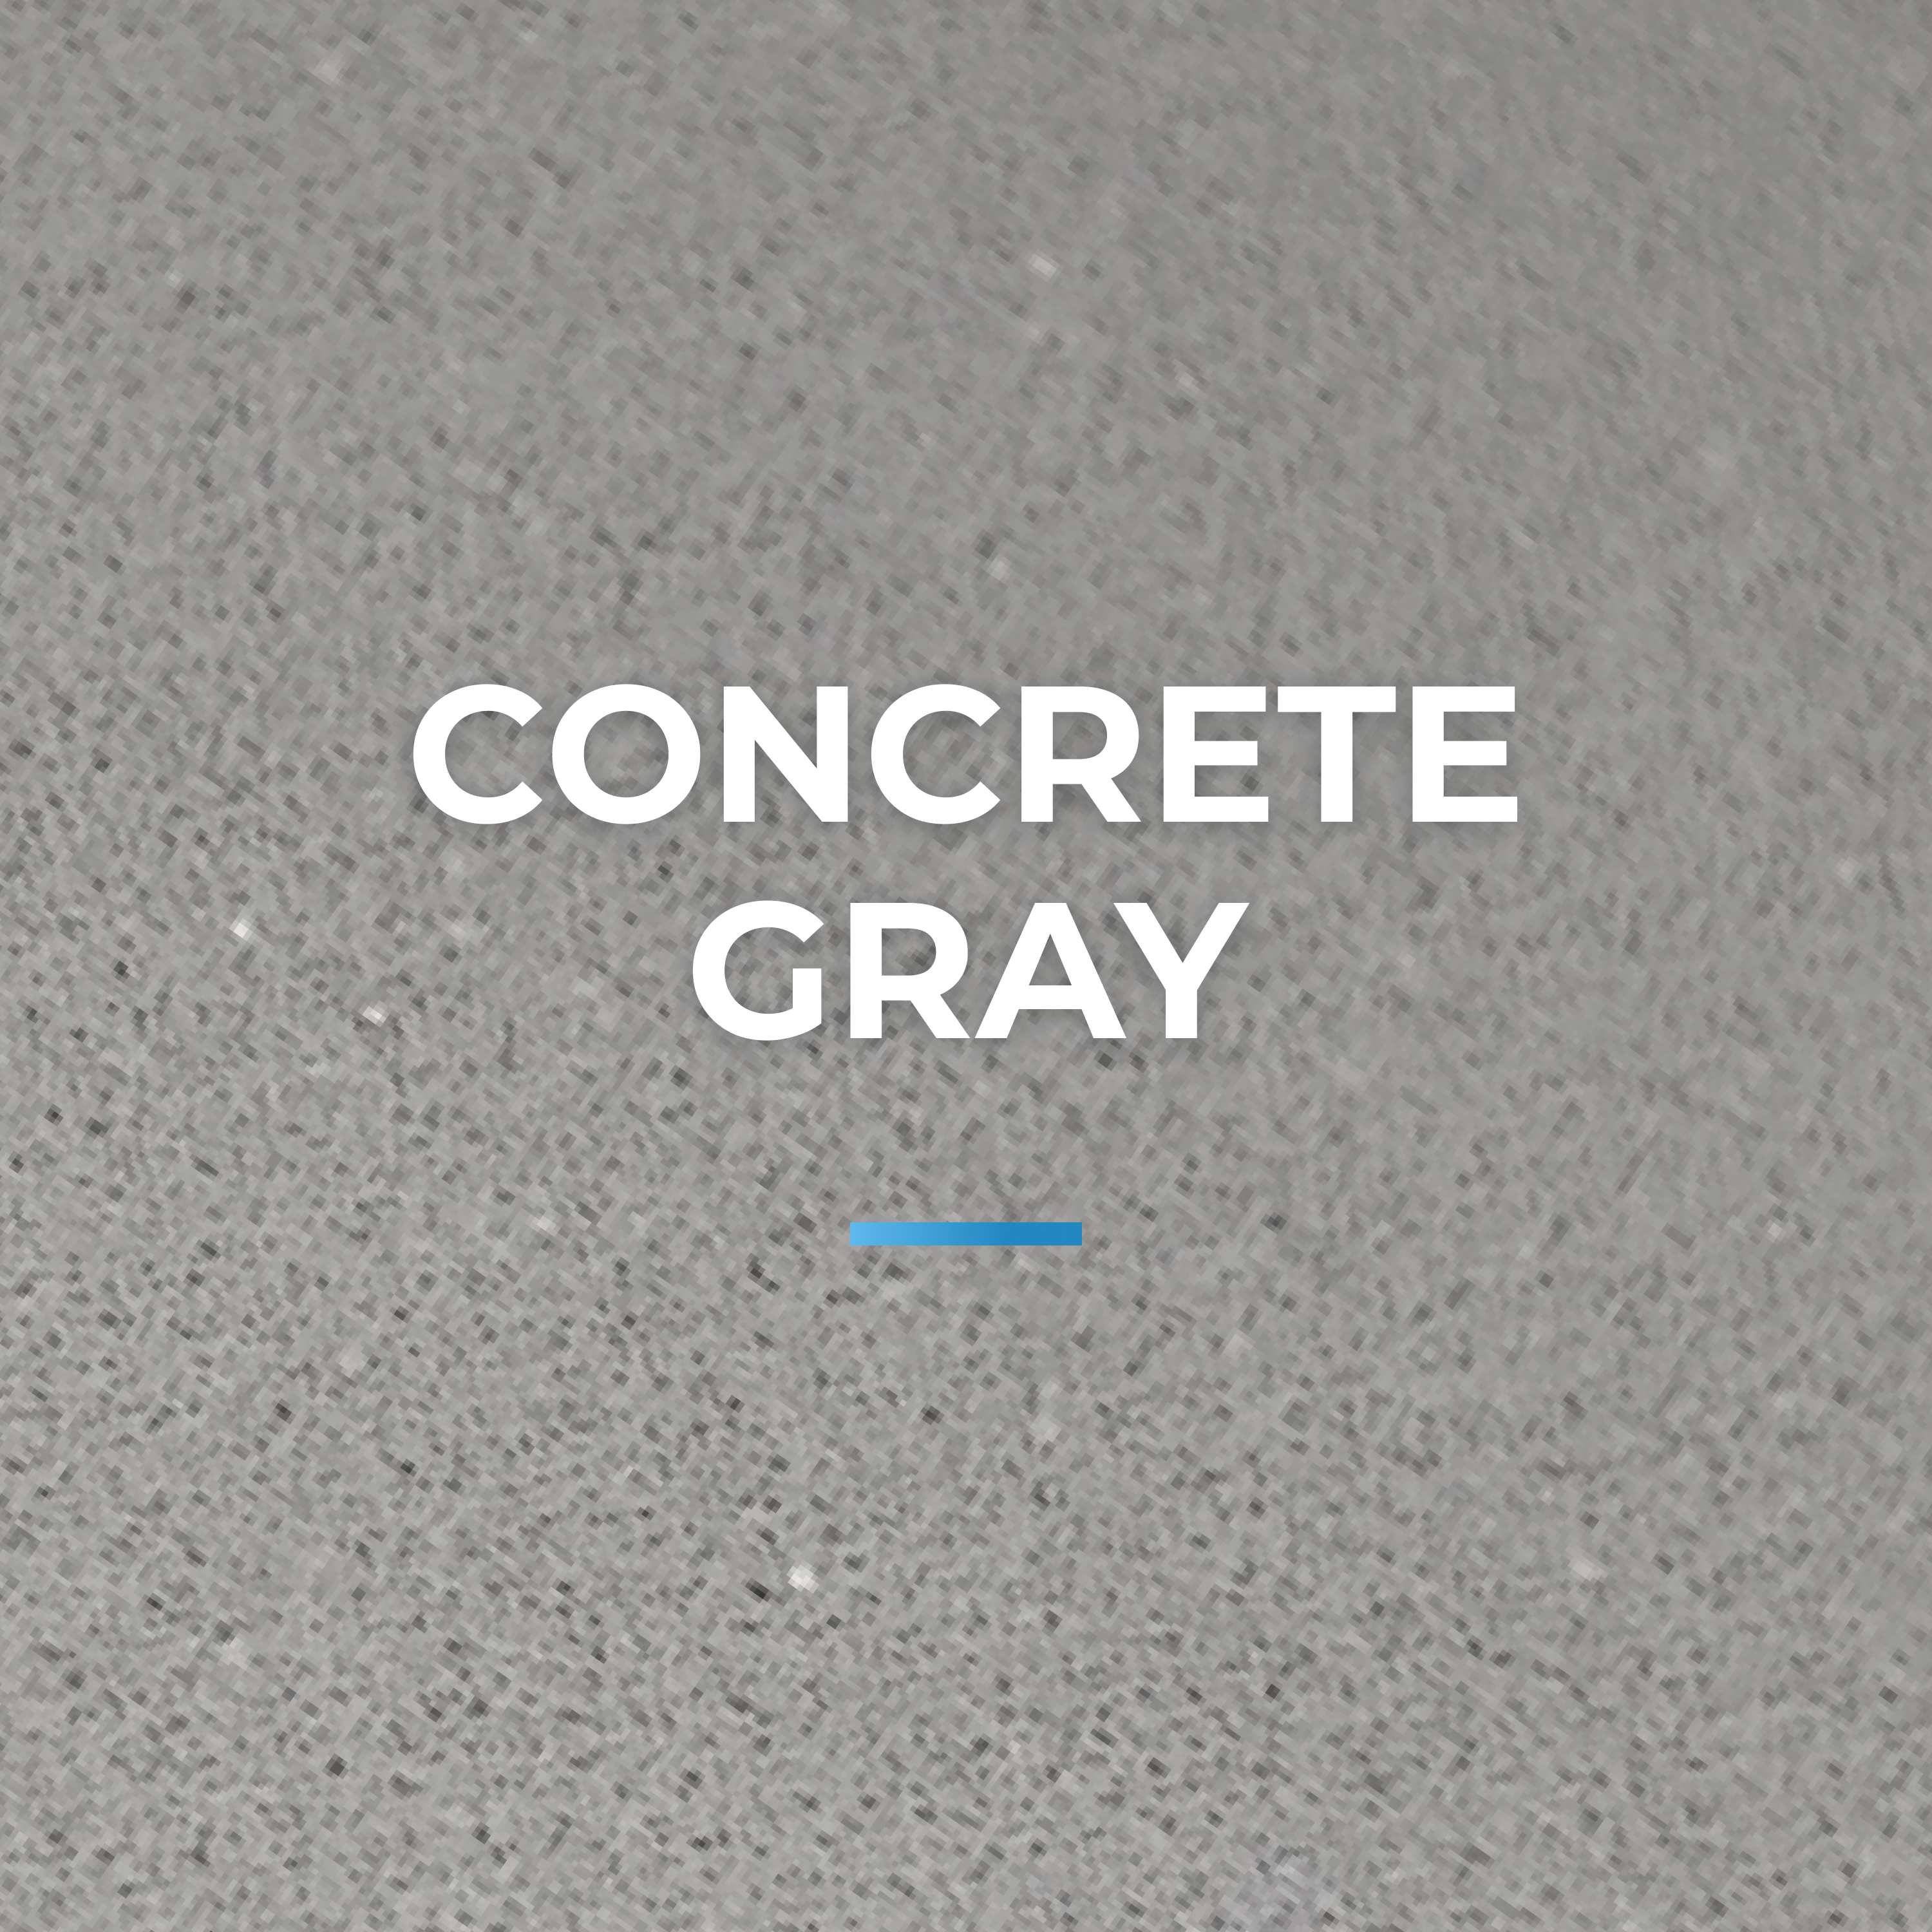 Concrete gray collection